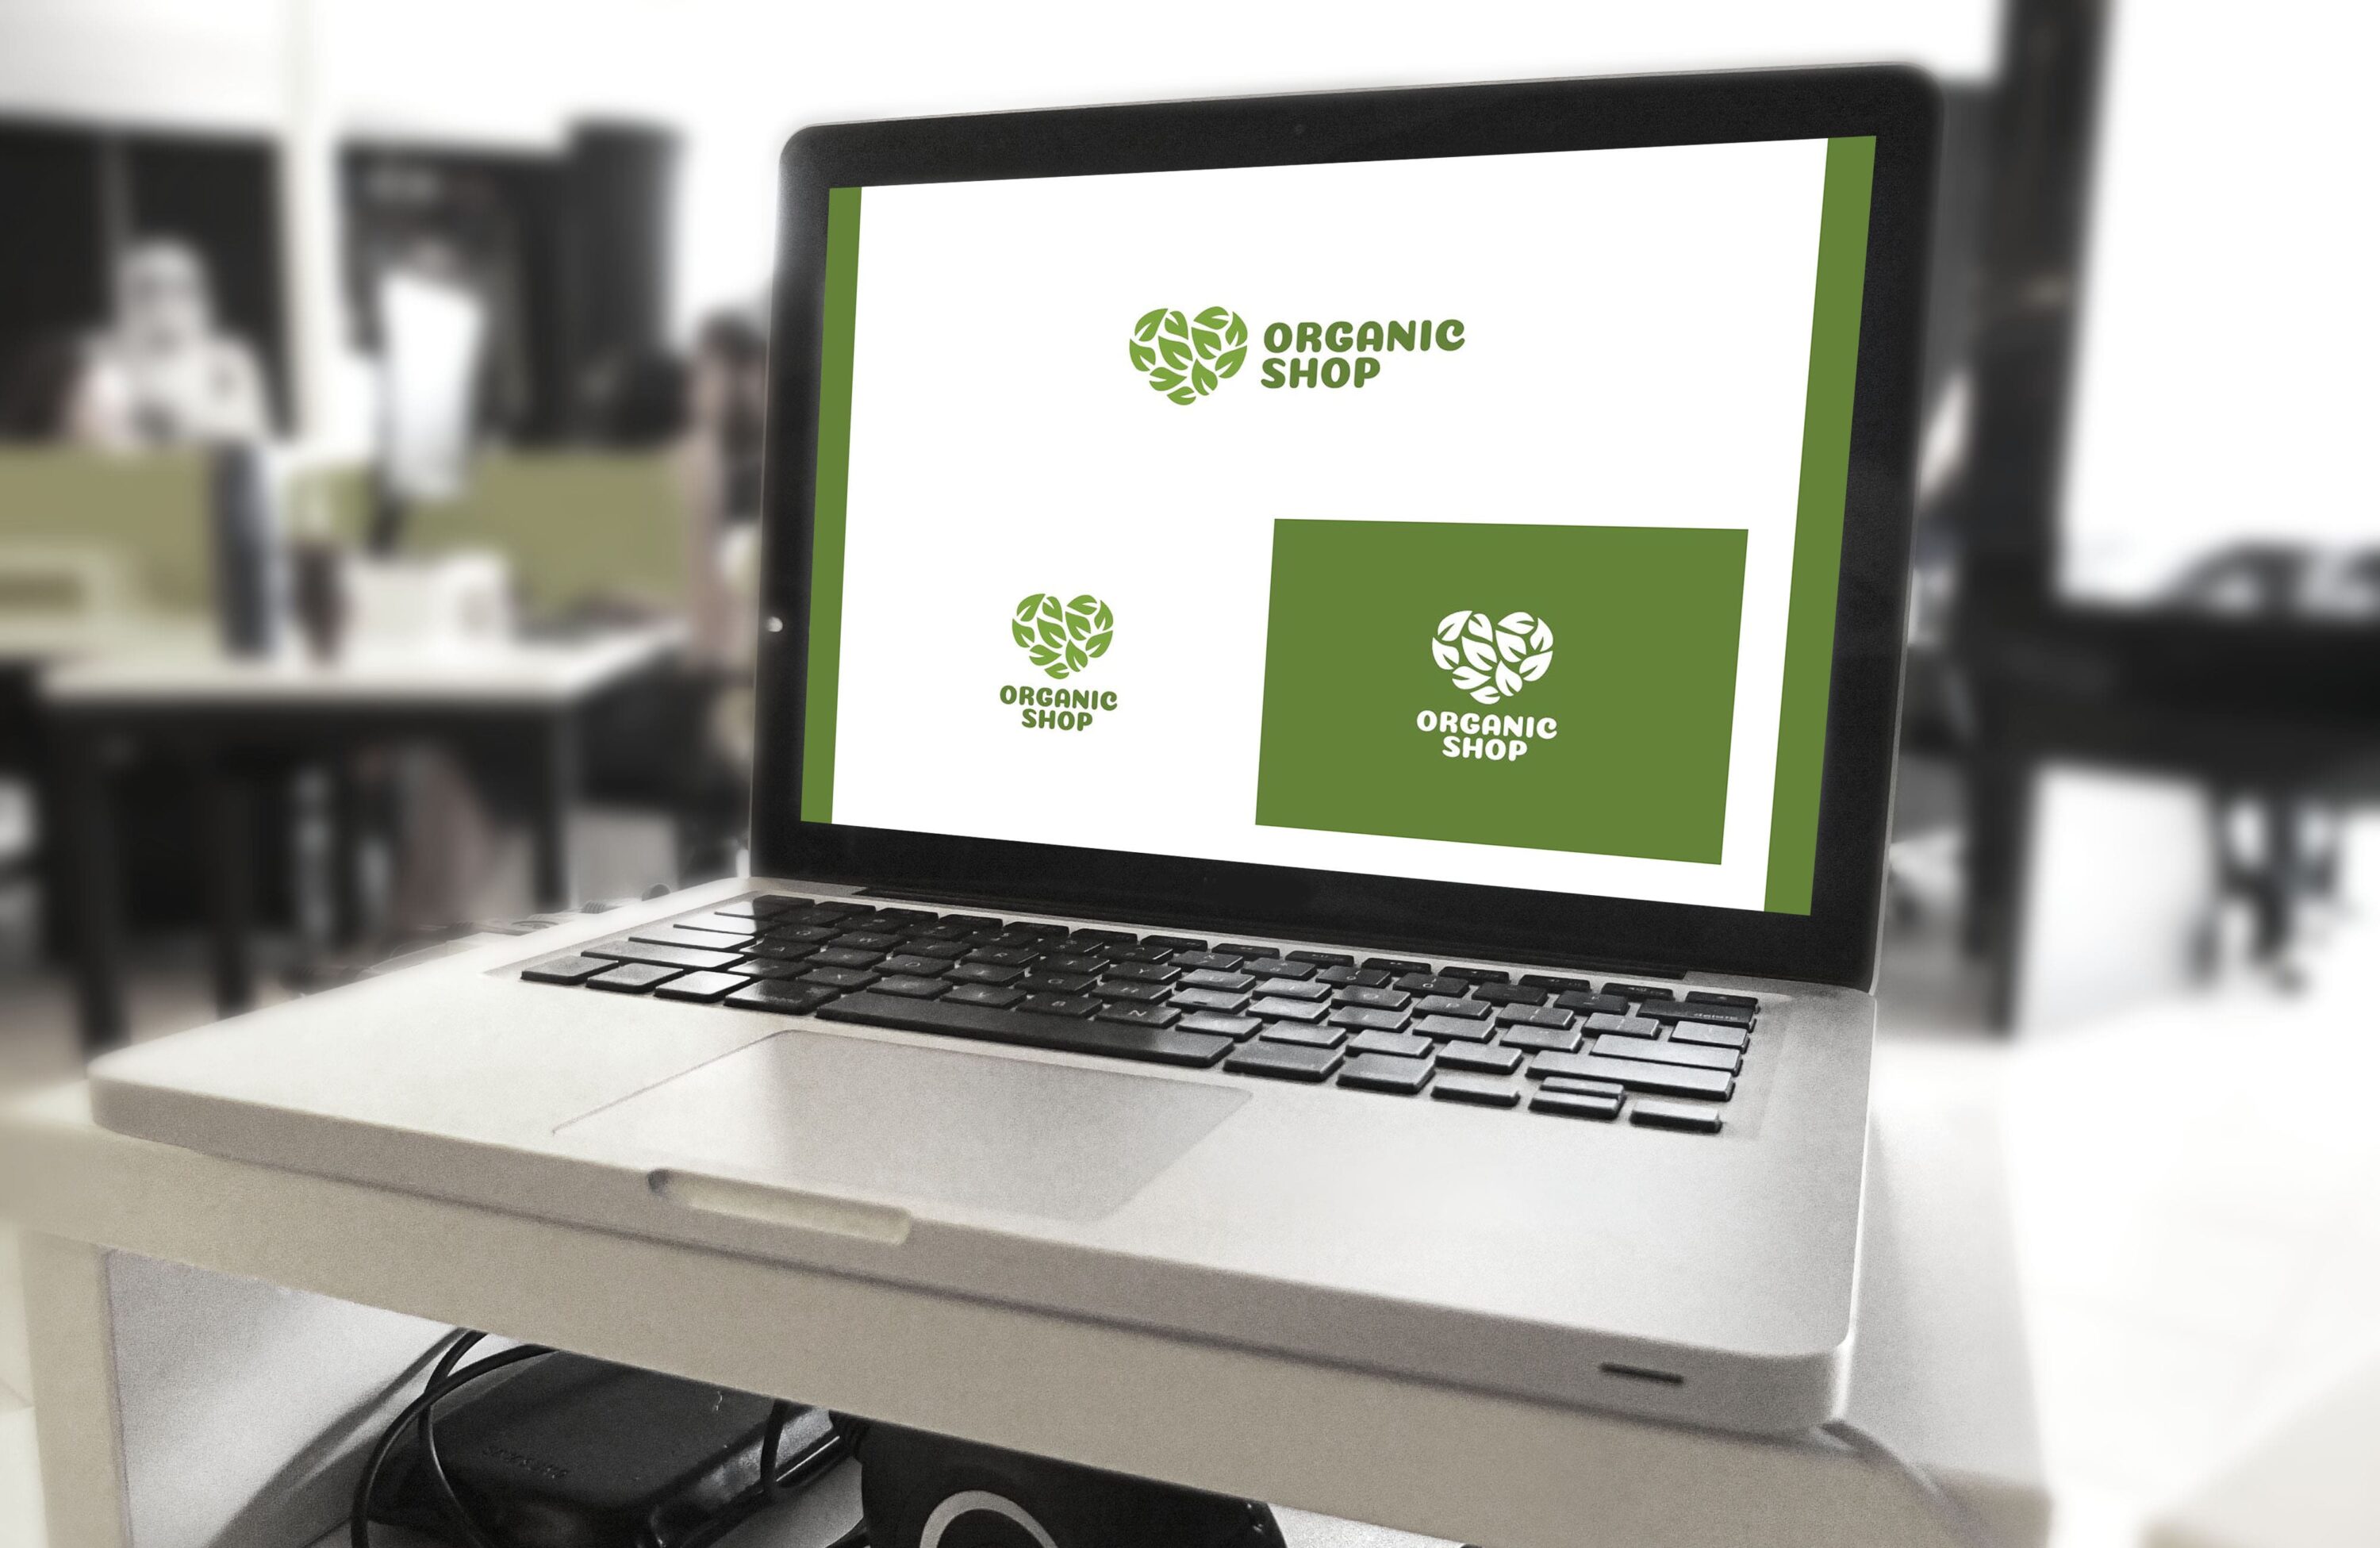 Organic shop logo - laptop.